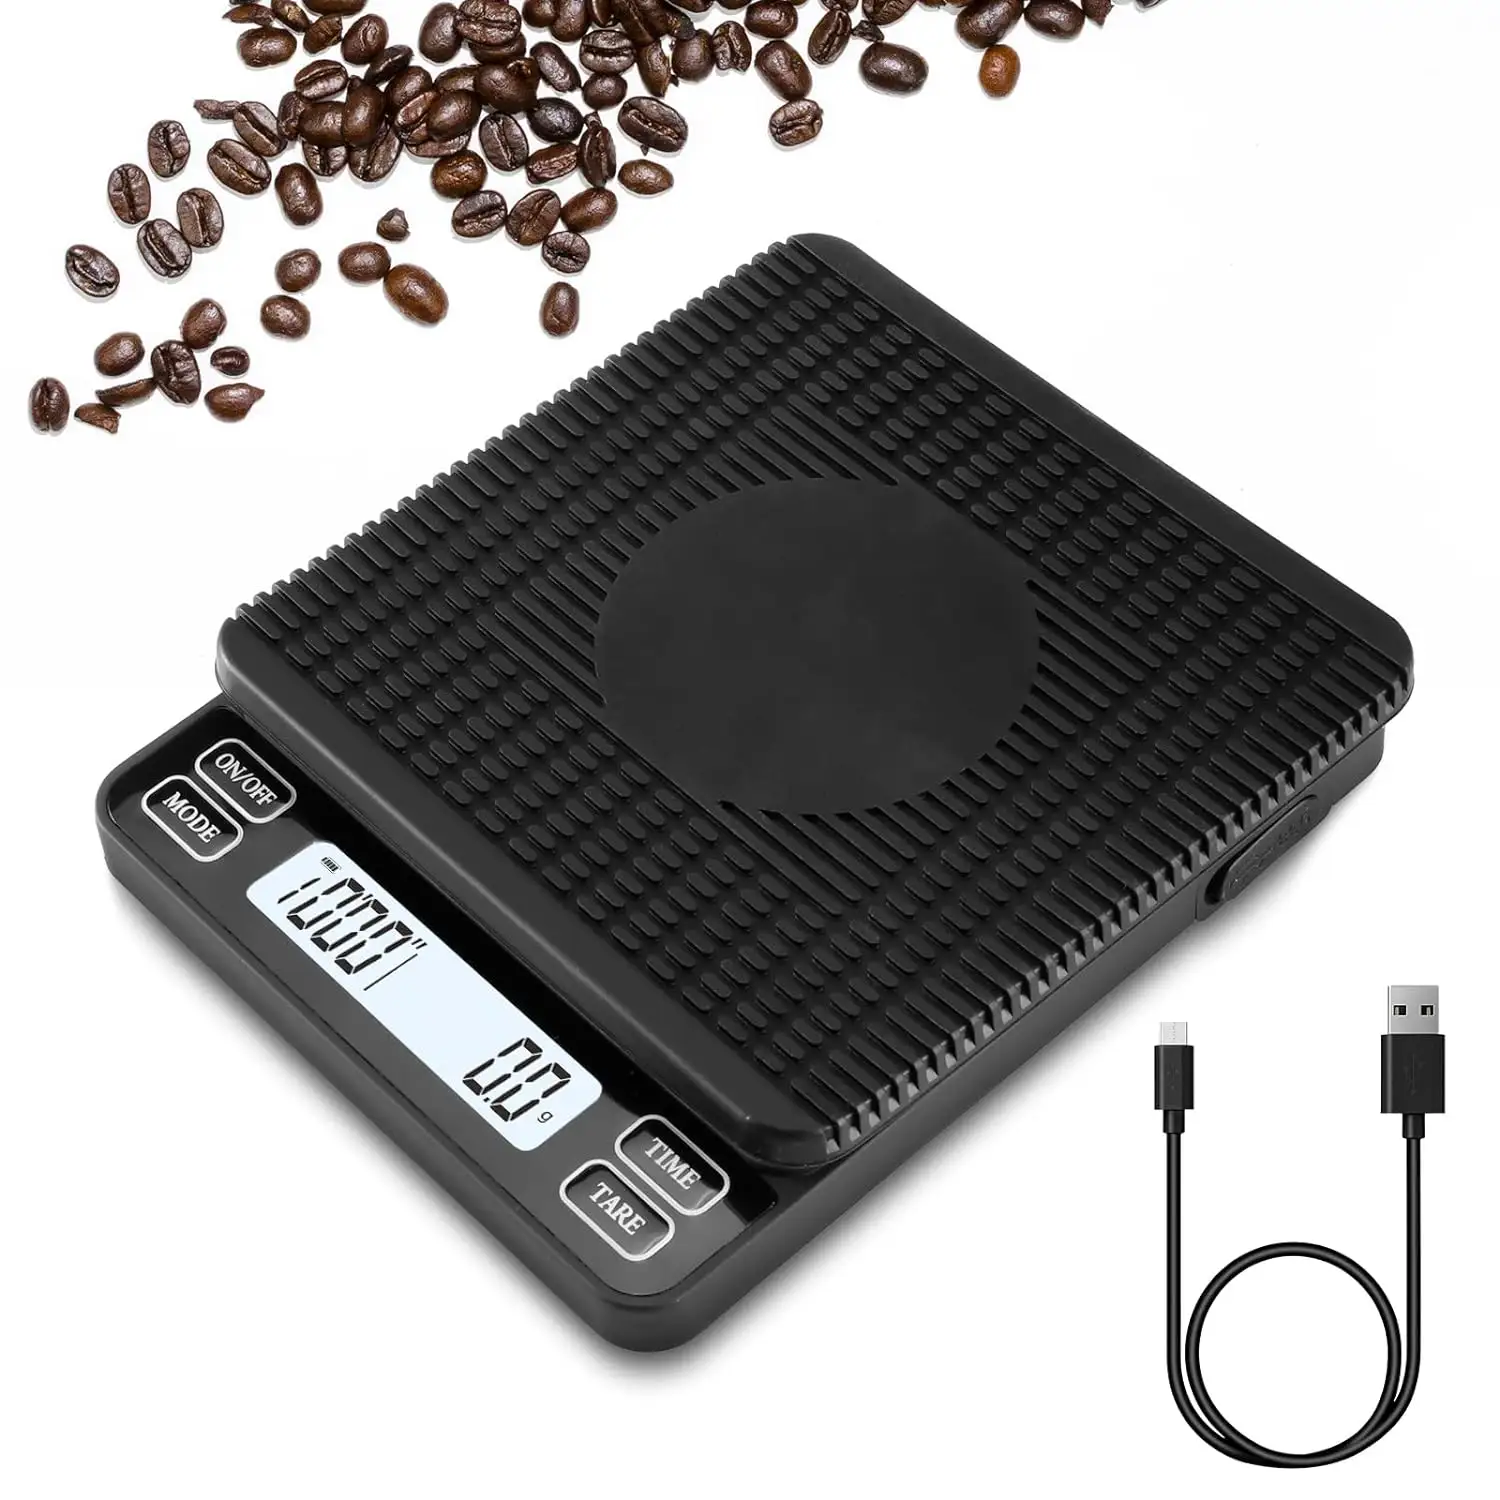 Gran oferta, báscula de cocina Digital negra de alta calidad, báscula de café de cocina de ponderación electrónica LED de 0,1G con temporizador